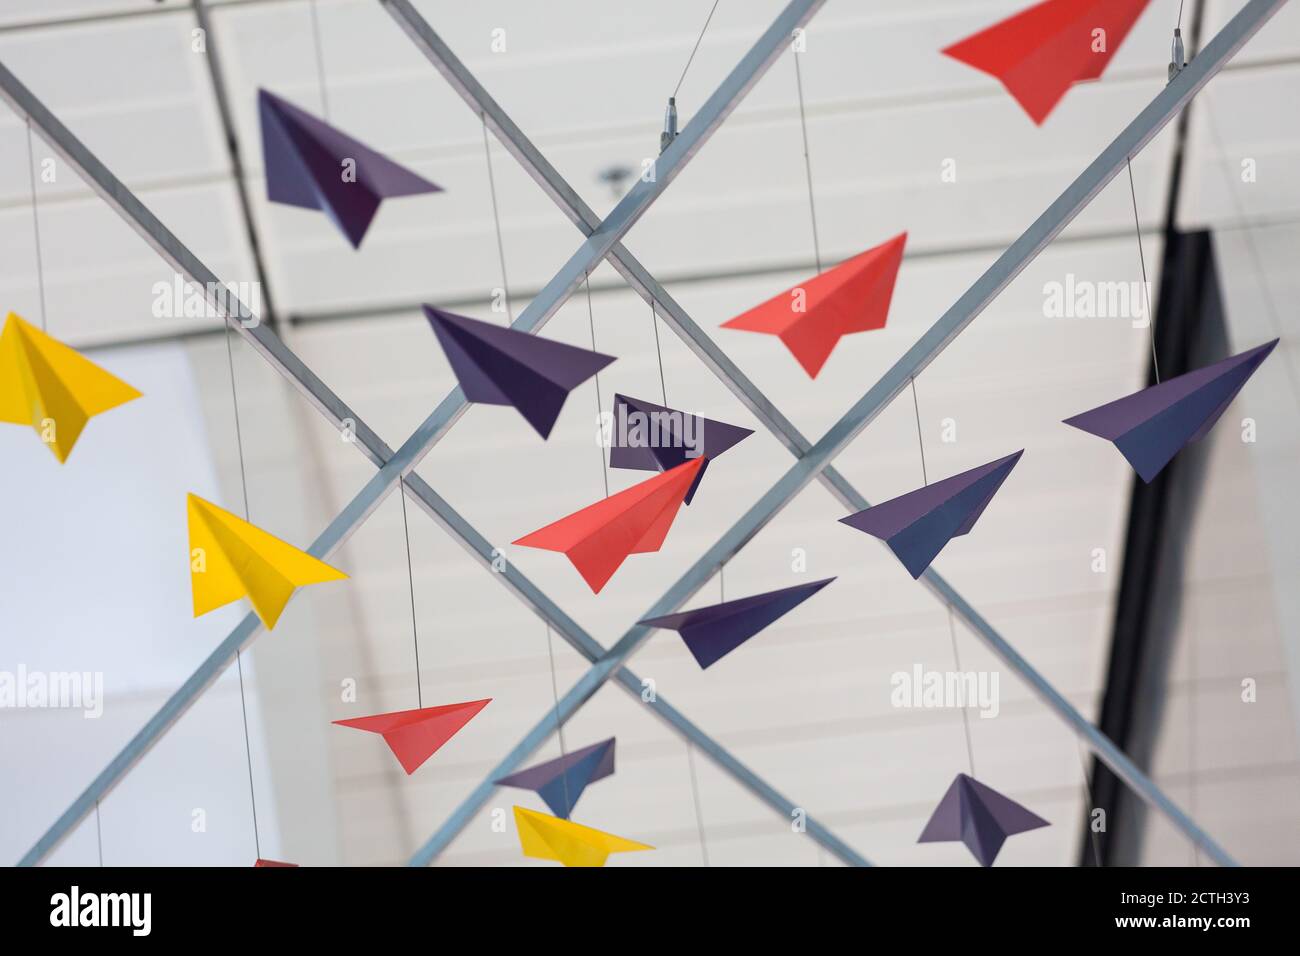 Gefaltet wie Papier Flugzeug Form, bunte Kunstgegenstände an der Wand am Changi Flughafen gehängt. Stockfoto